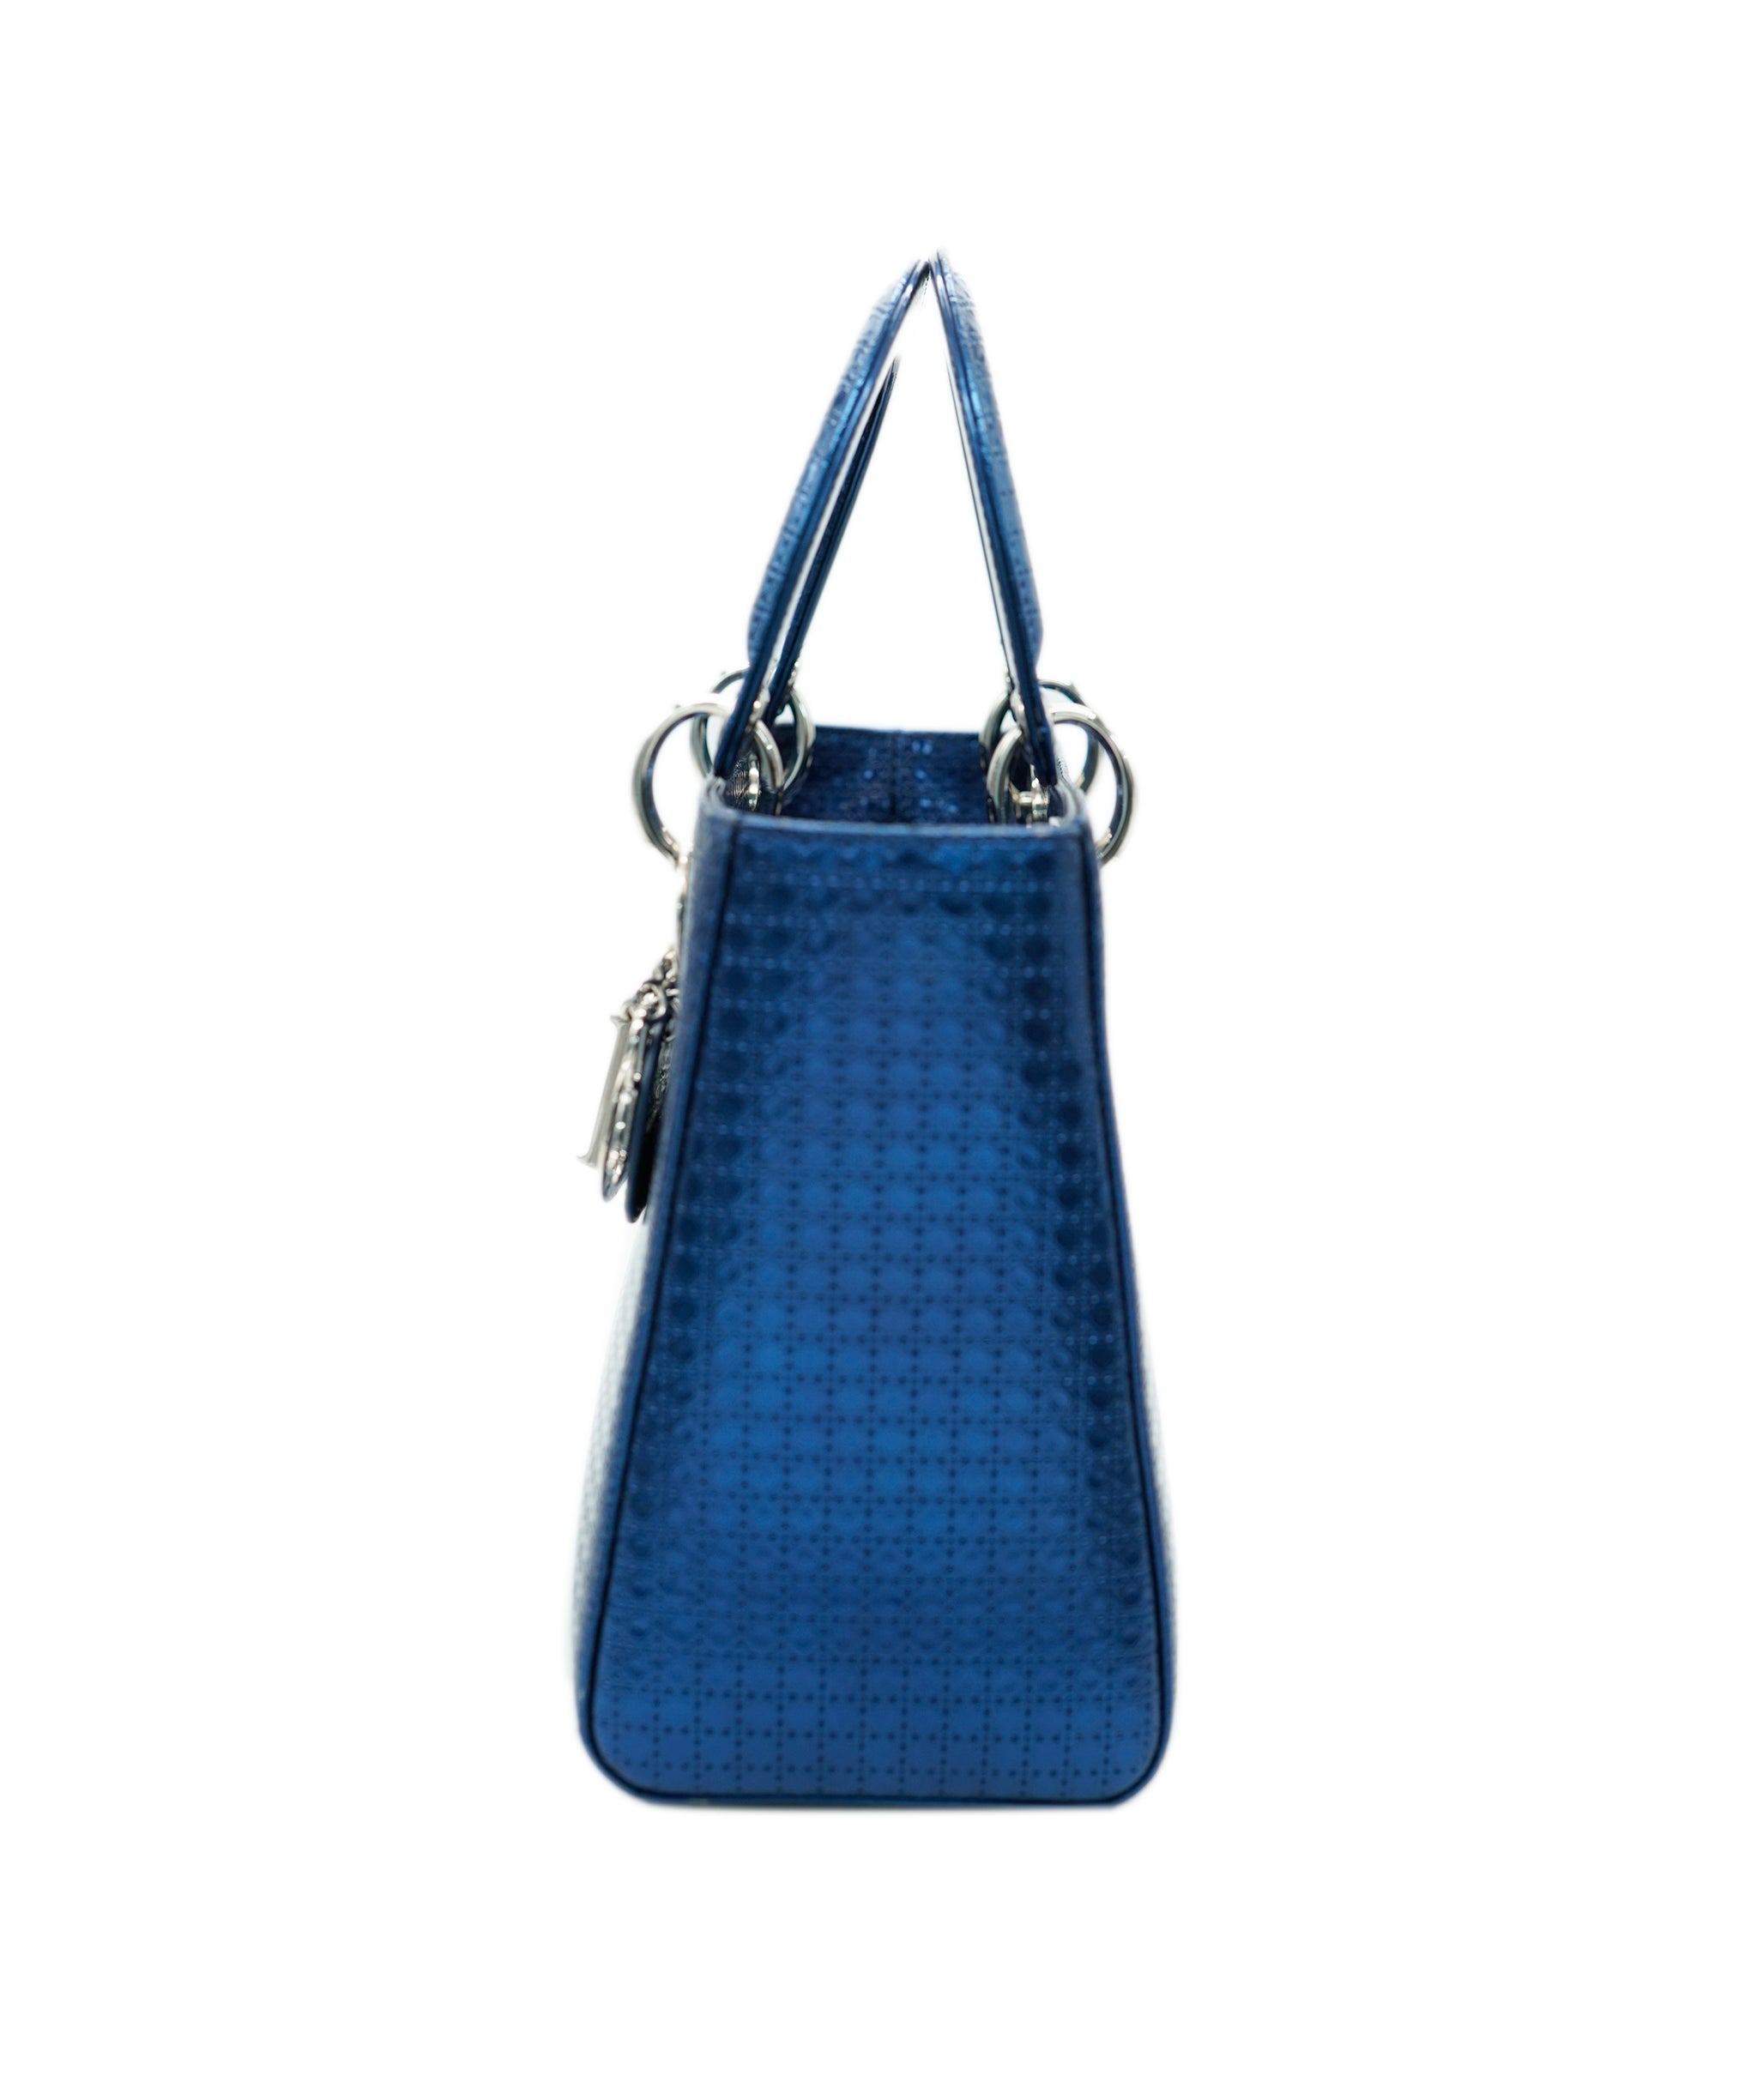 Lady Dior Medium Micro Cannage Blue - SYCA026